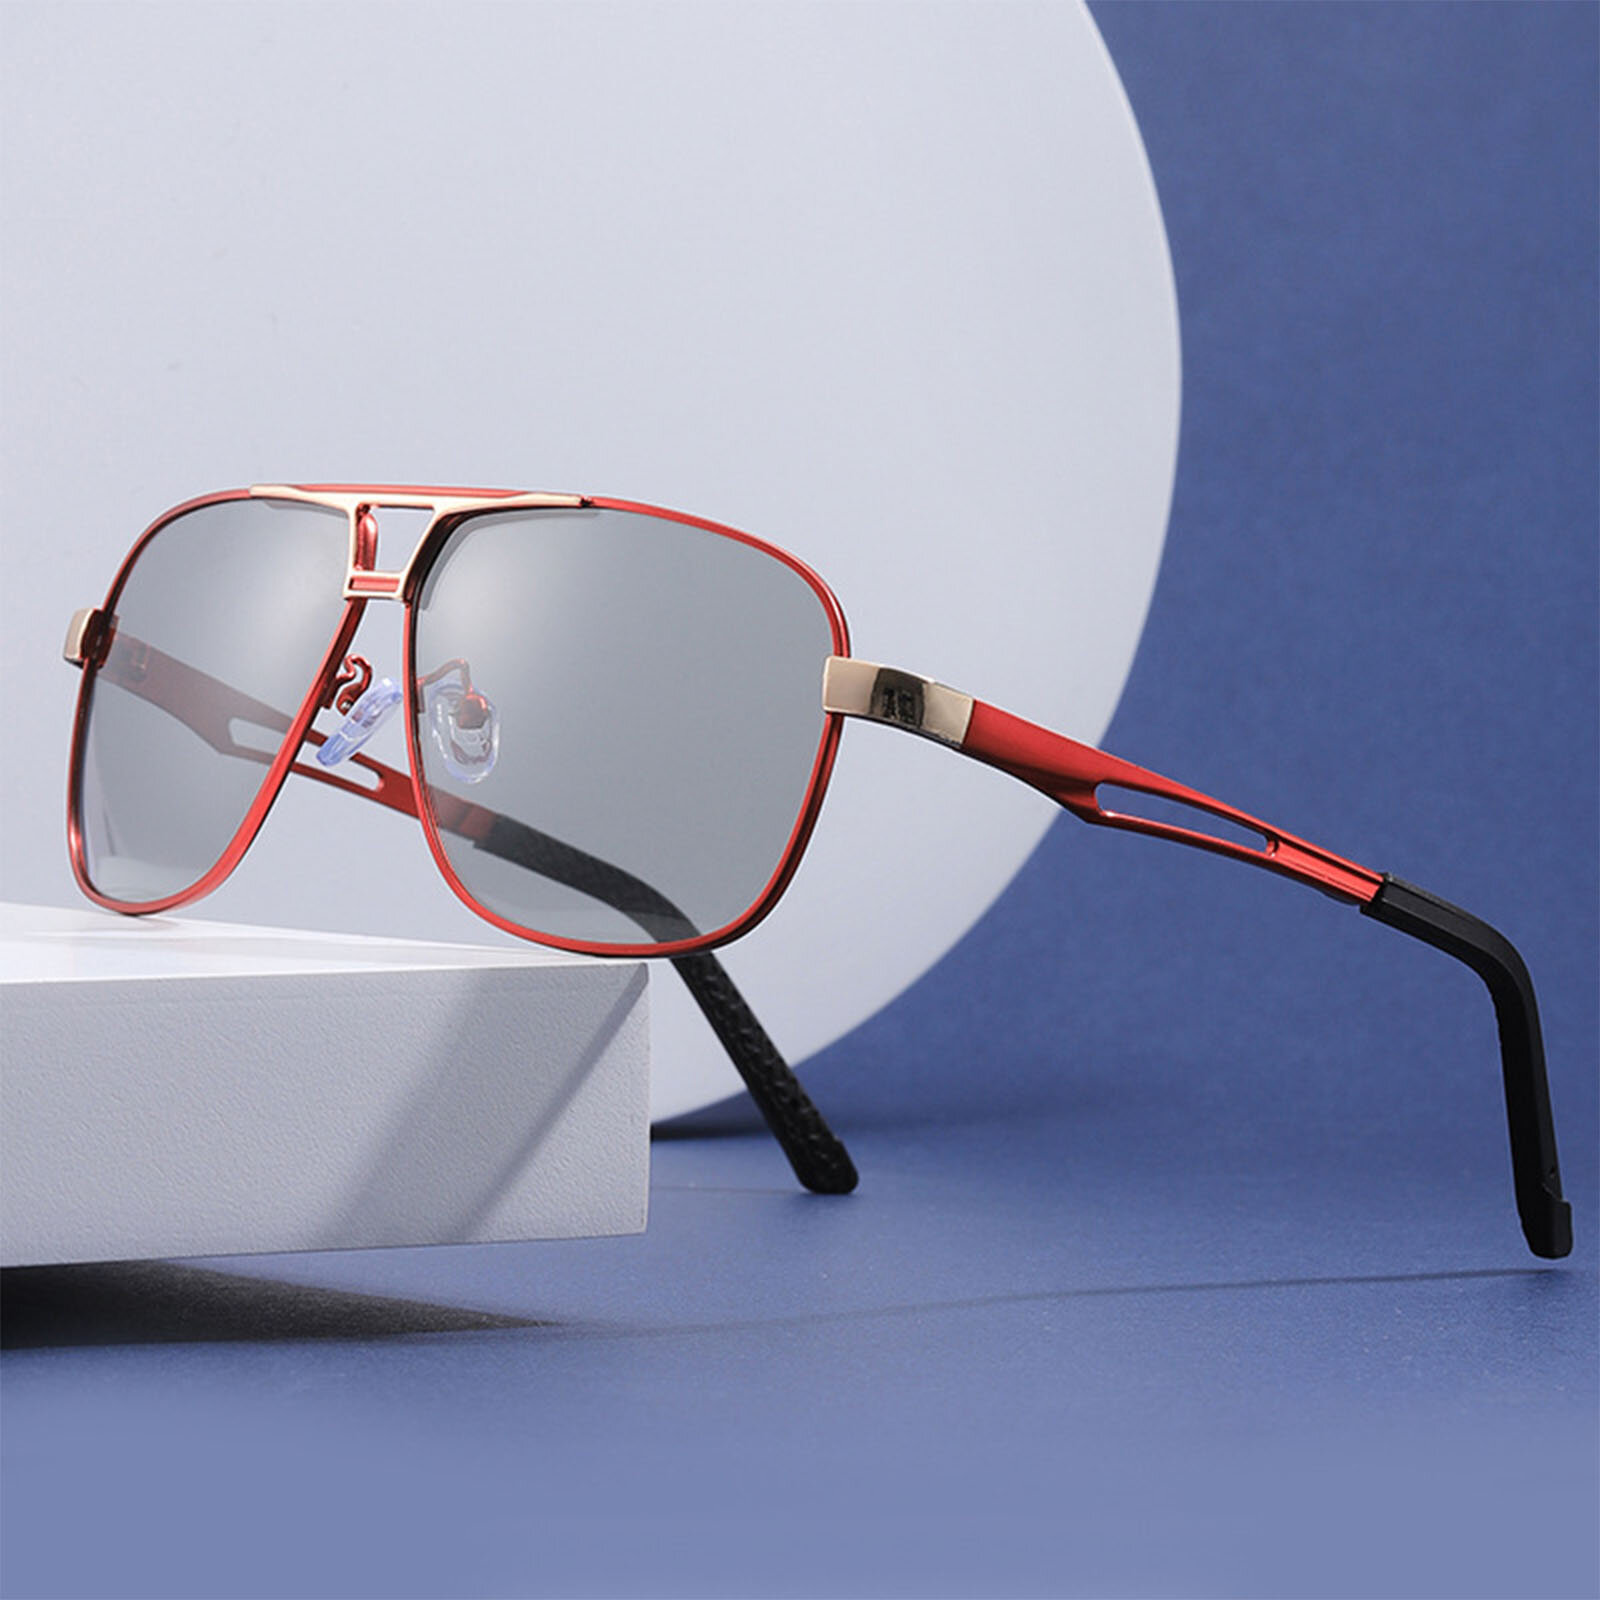 

Jassy Мужская мода UV Защитные солнцезащитные очки ночного видения для вождения днем и ночью поляризованные с изменением